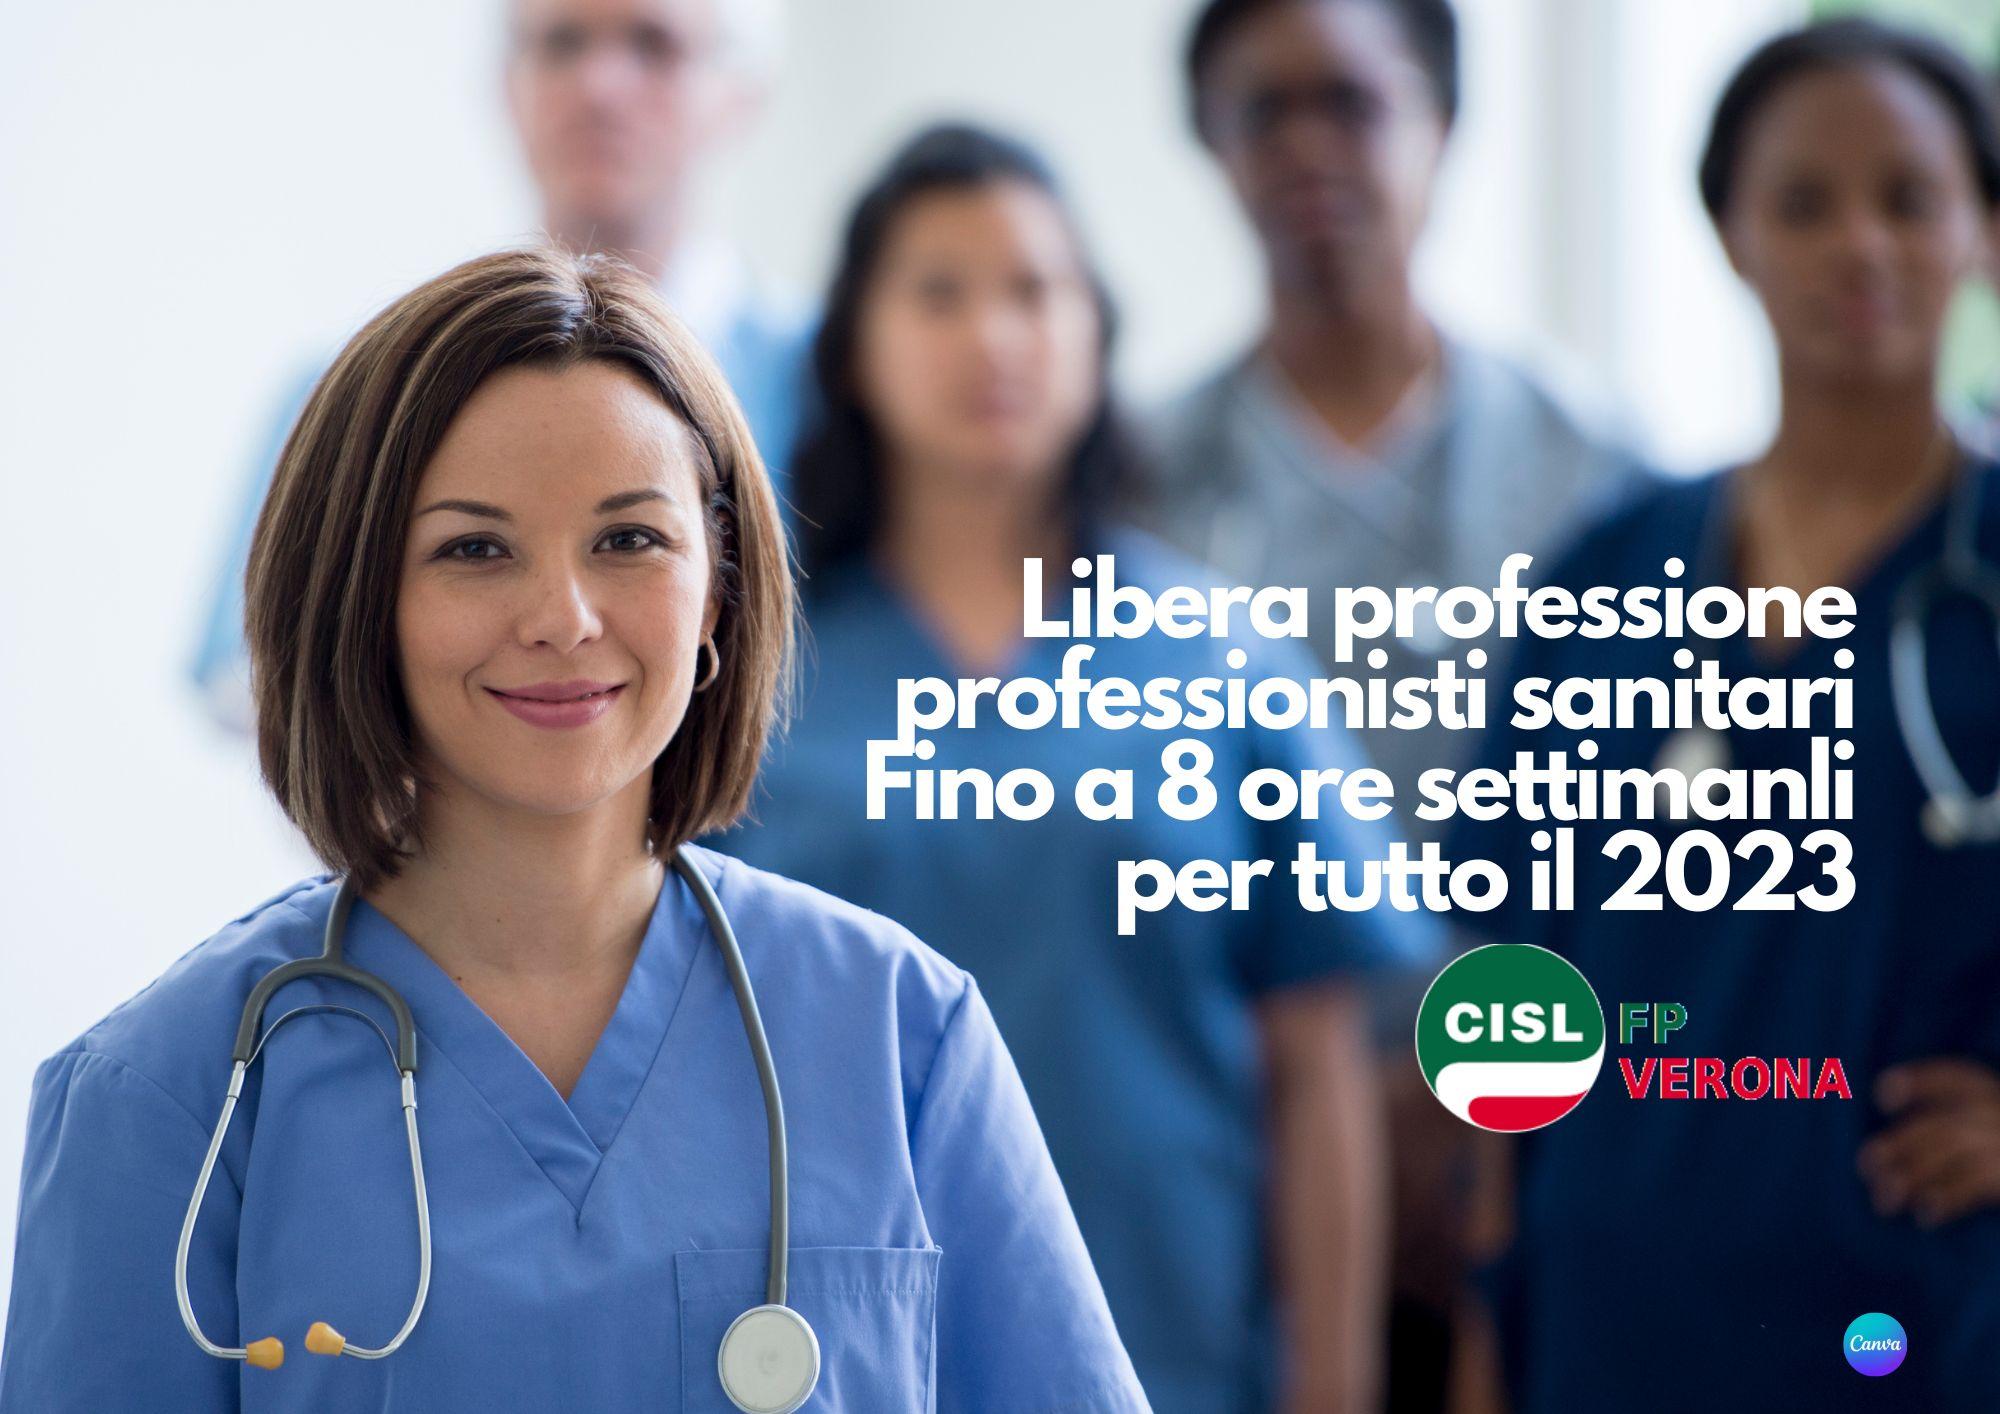 CISL FP Verona. Libera professione professionisti sanitari confermata nel 2023 sino a 8 ore settimanali